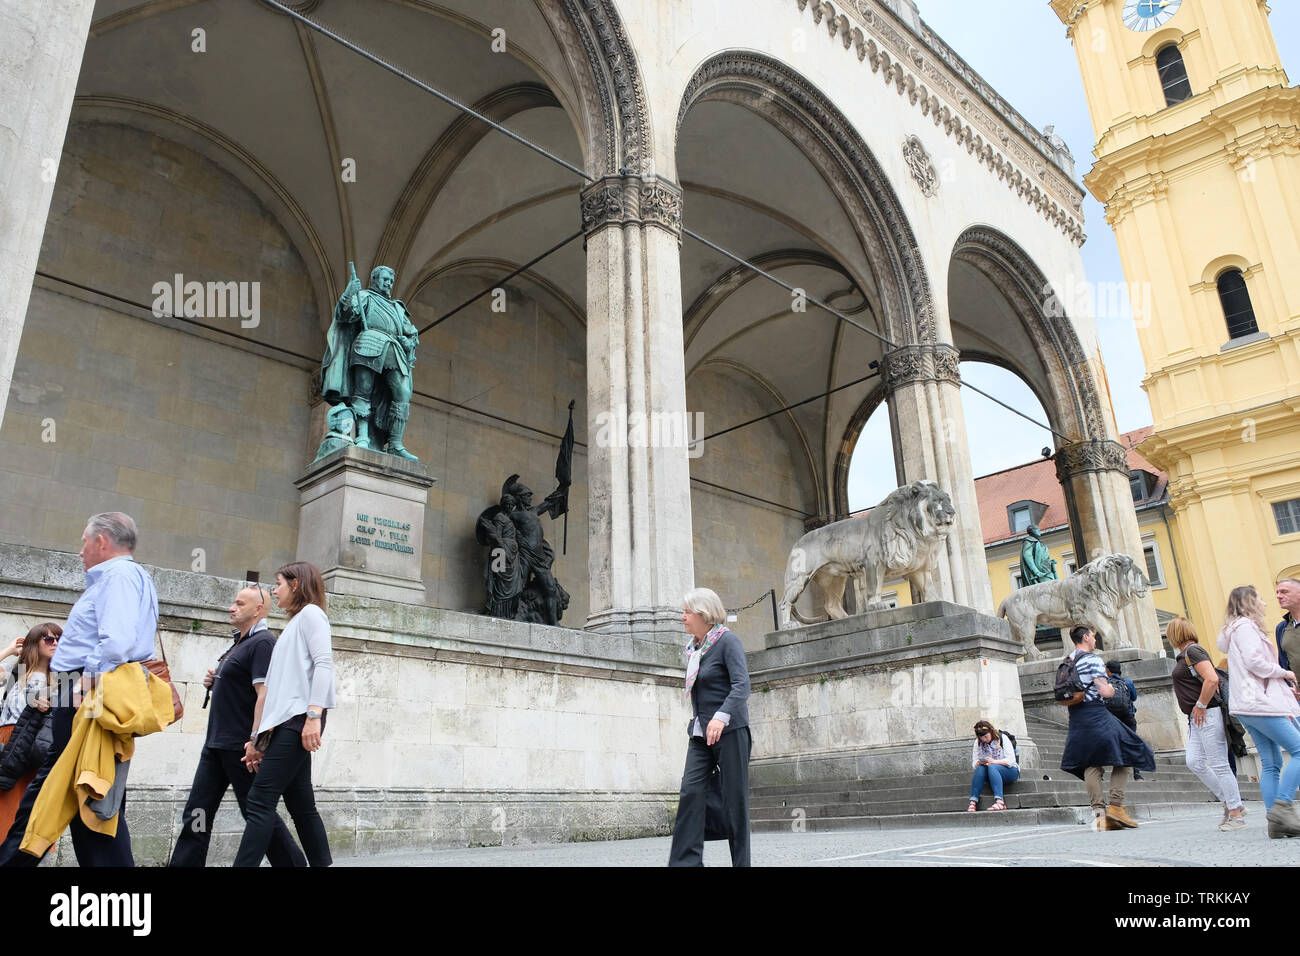 Mai 2019 - Die Feldherrnhalle ist eine monumentale Loggia auf dem Odeonsplatz in München, nach der Loggia dei Lanzi in Florenz, München, Deutschland modelliert Stockfoto